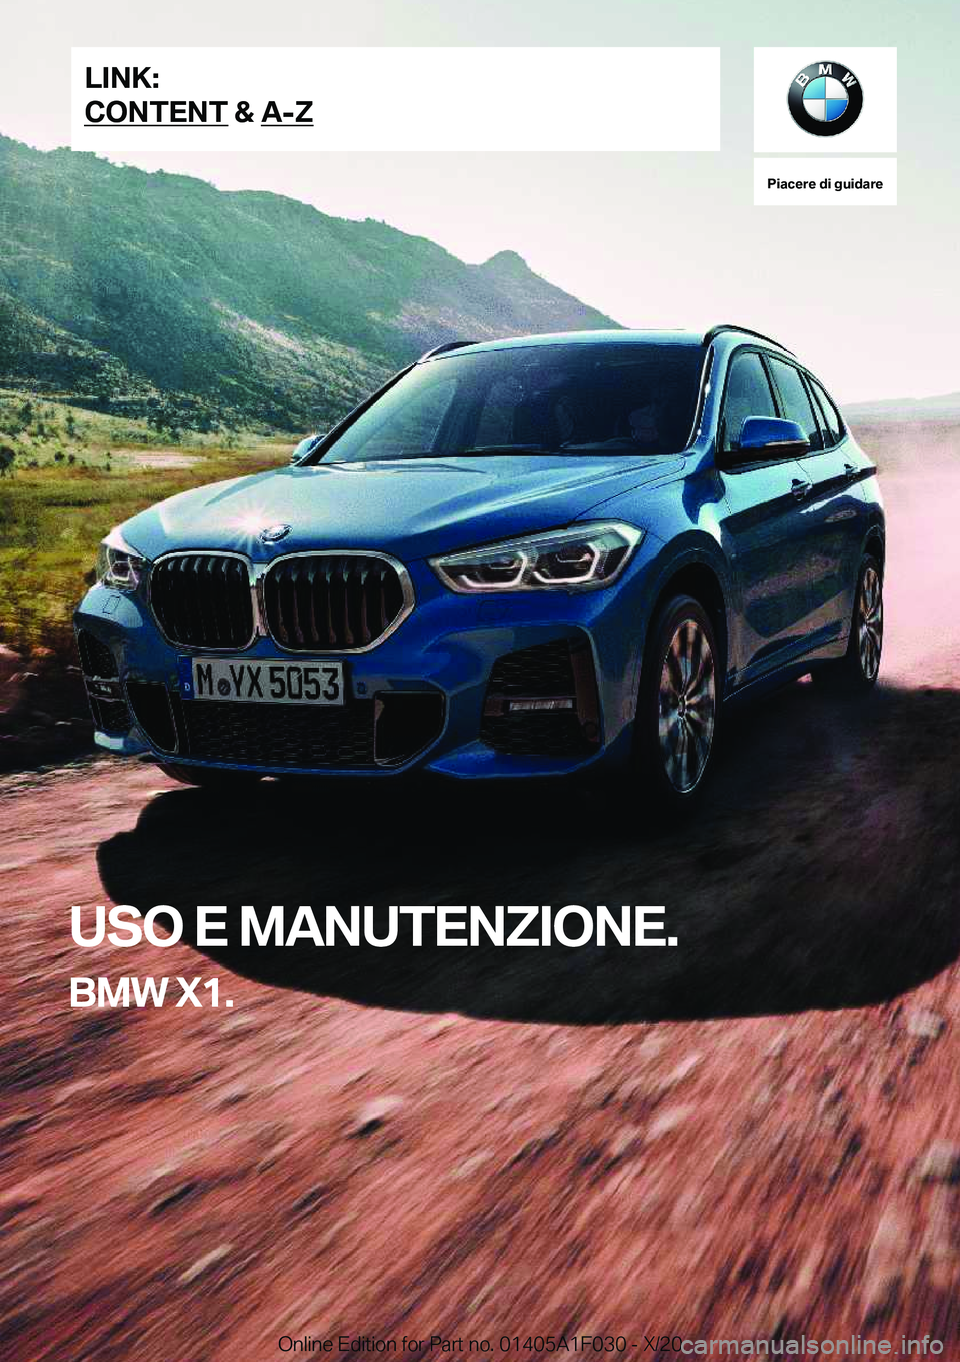 BMW X1 2021  Libretti Di Uso E manutenzione (in Italian) �P�i�a�c�e�r�e��d�i��g�u�i�d�a�r�e
�U�S�O��E��M�A�N�U�T�E�N�Z�I�O�N�E�.
�B�M�W��X�1�.�L�I�N�K�:
�C�O�N�T�E�N�T��&��A�-�Z�O�n�l�i�n�e��E�d�i�t�i�o�n��f�o�r��P�a�r�t��n�o�.��0�1�4�0�5�A�1�F�